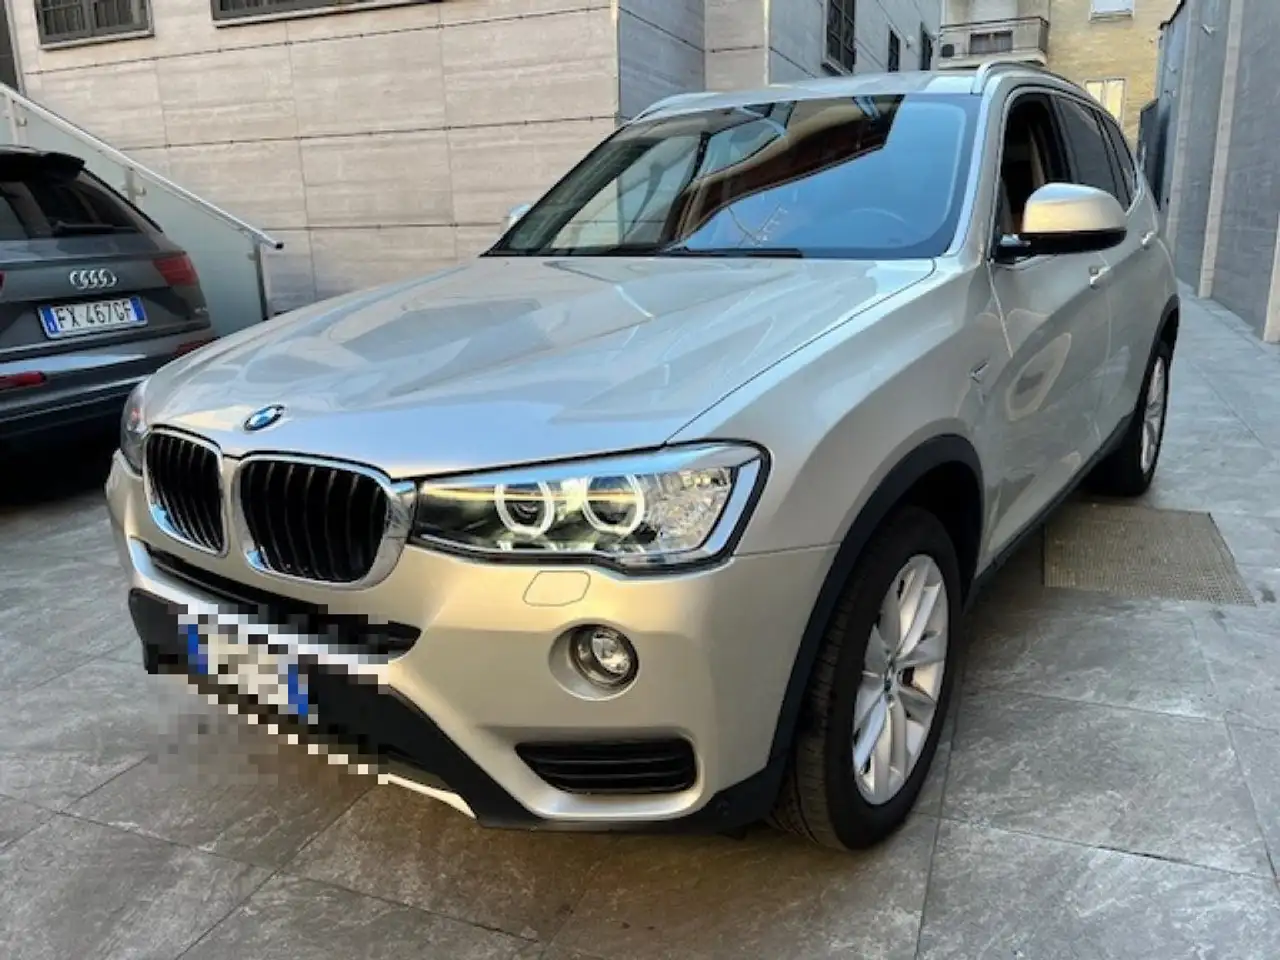 BMW X3 SUV/4x4/Pick-up in Grijs tweedehands in Sesto San Giovanni voor € 19.600,-